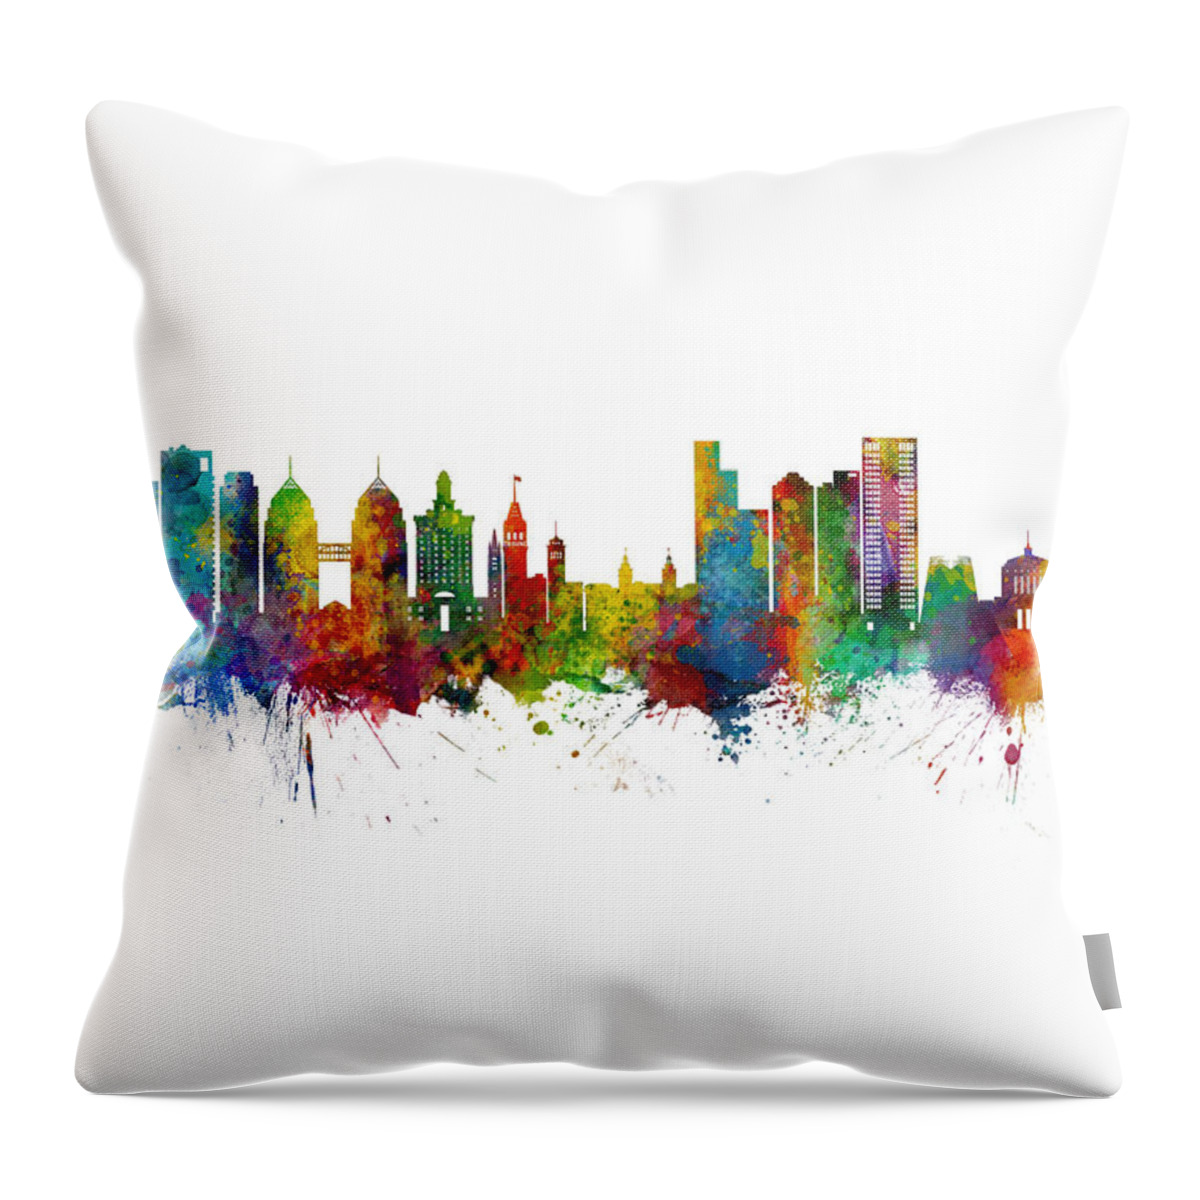 Oakland Throw Pillow featuring the digital art Oakland California Skyline #9 by Michael Tompsett